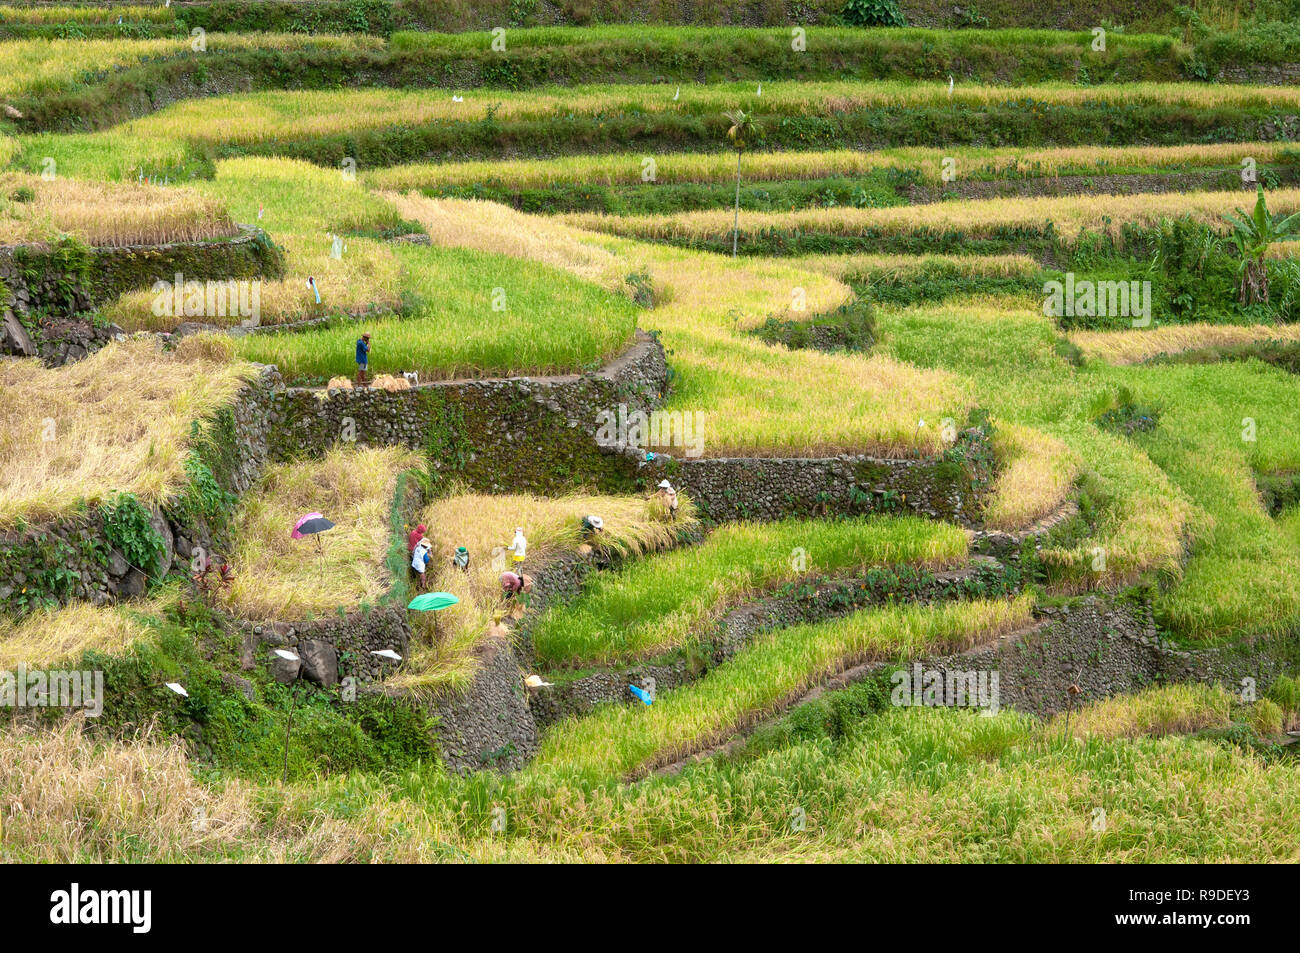 Les terrasses de riz de Batad, Province d'Ifugao, Cordillera, Luzon, Philippines, Asie, Asie du Sud, UNESCO World Heritage Banque D'Images